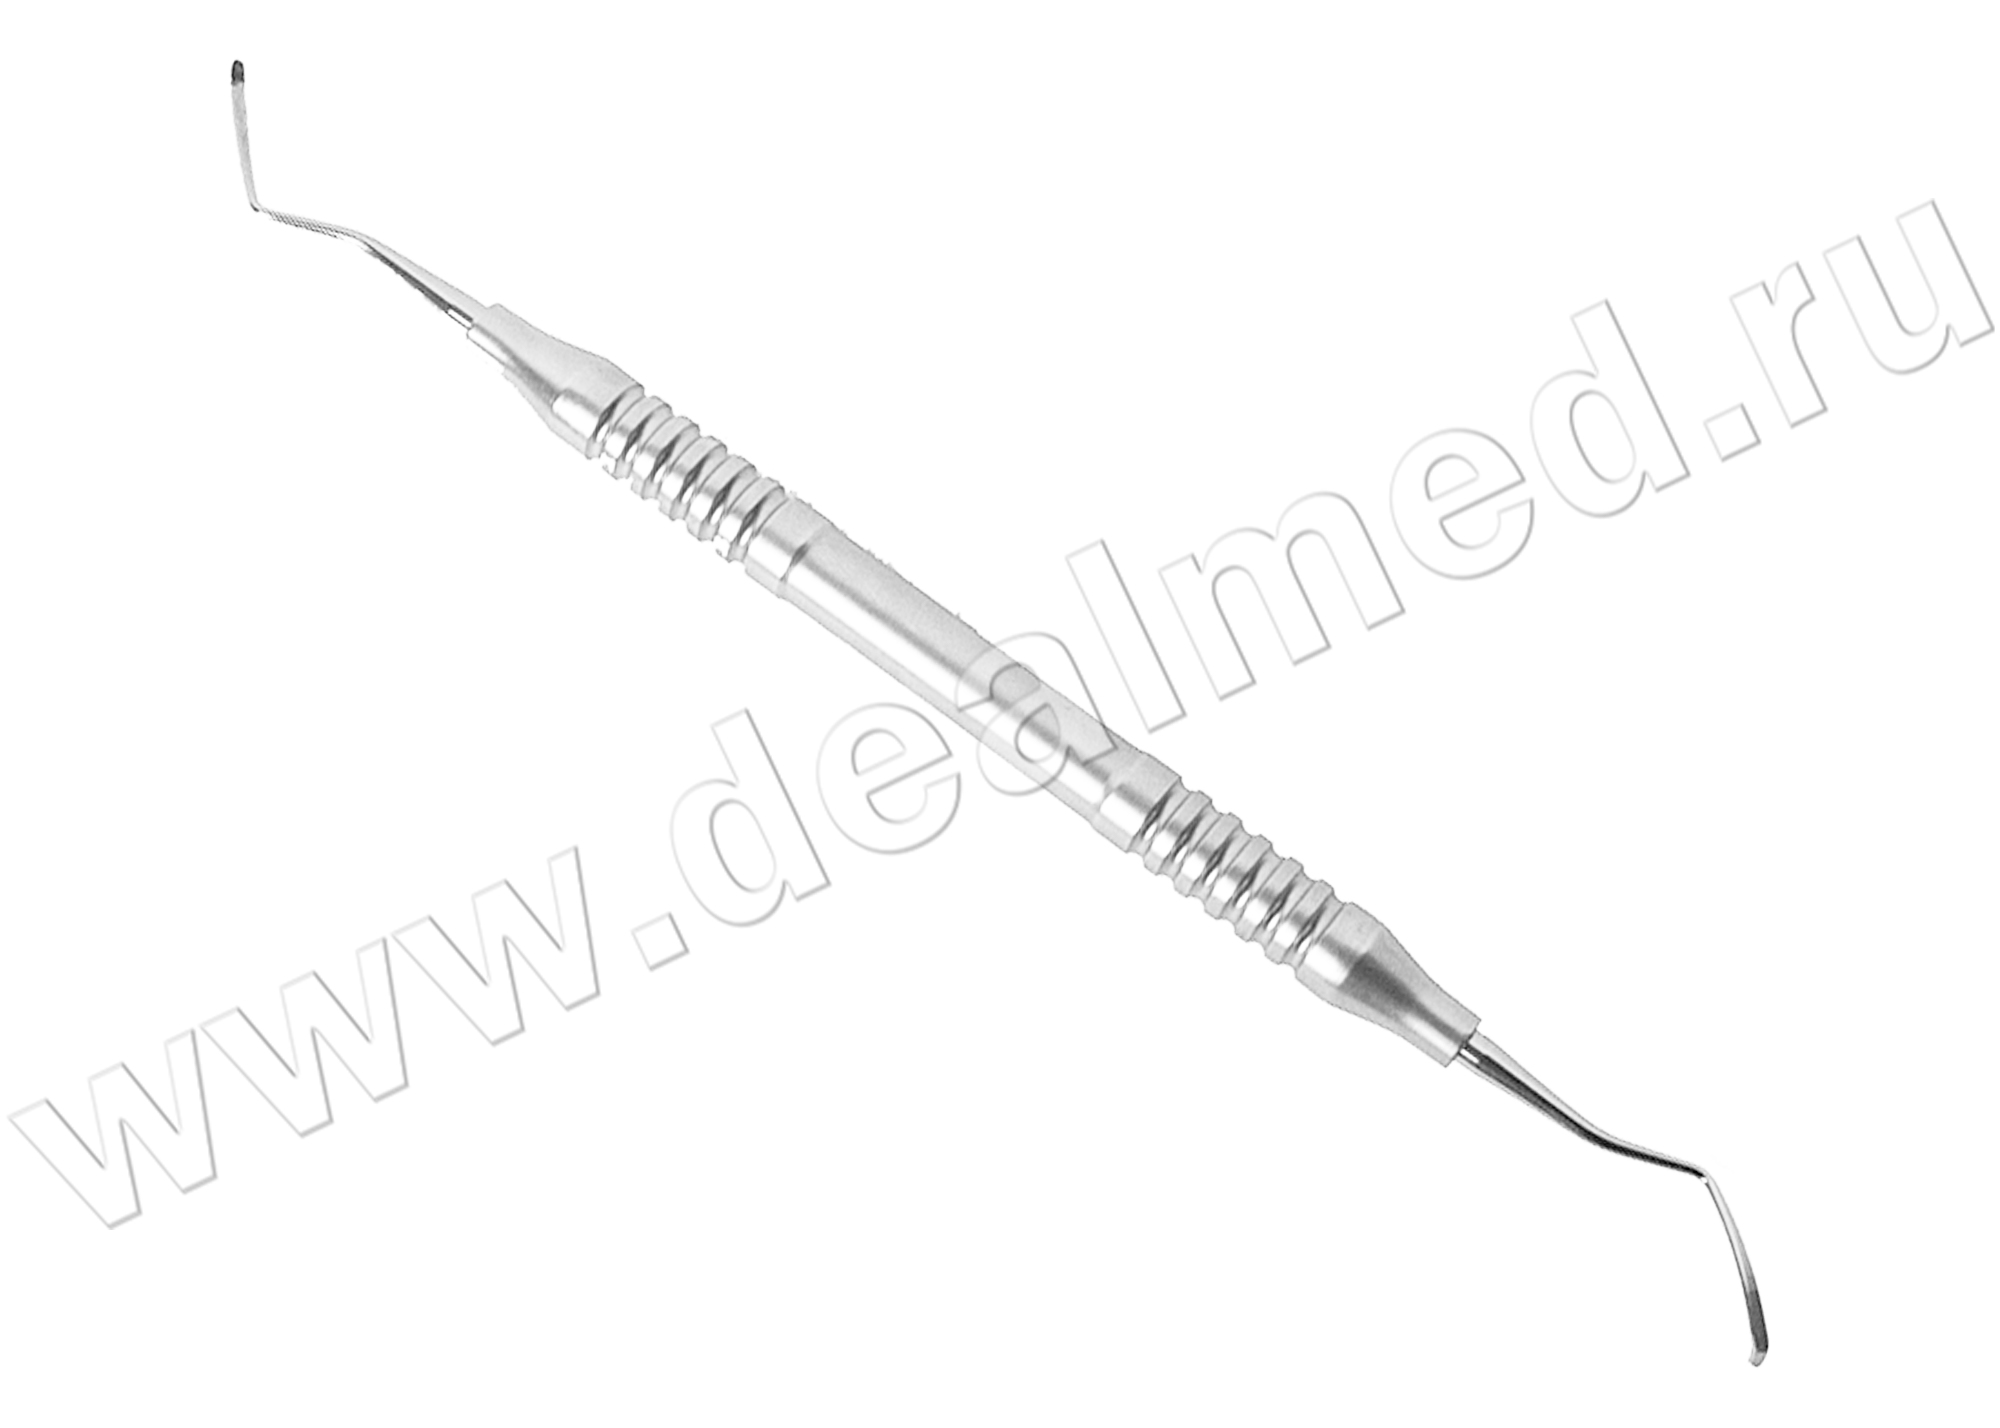 Кюрета стоматологическая, модель 2 длина 1,3 мм 17,5 см, пустотелая ручка (арт. 43-350-02-07) KLS Martin, Германия